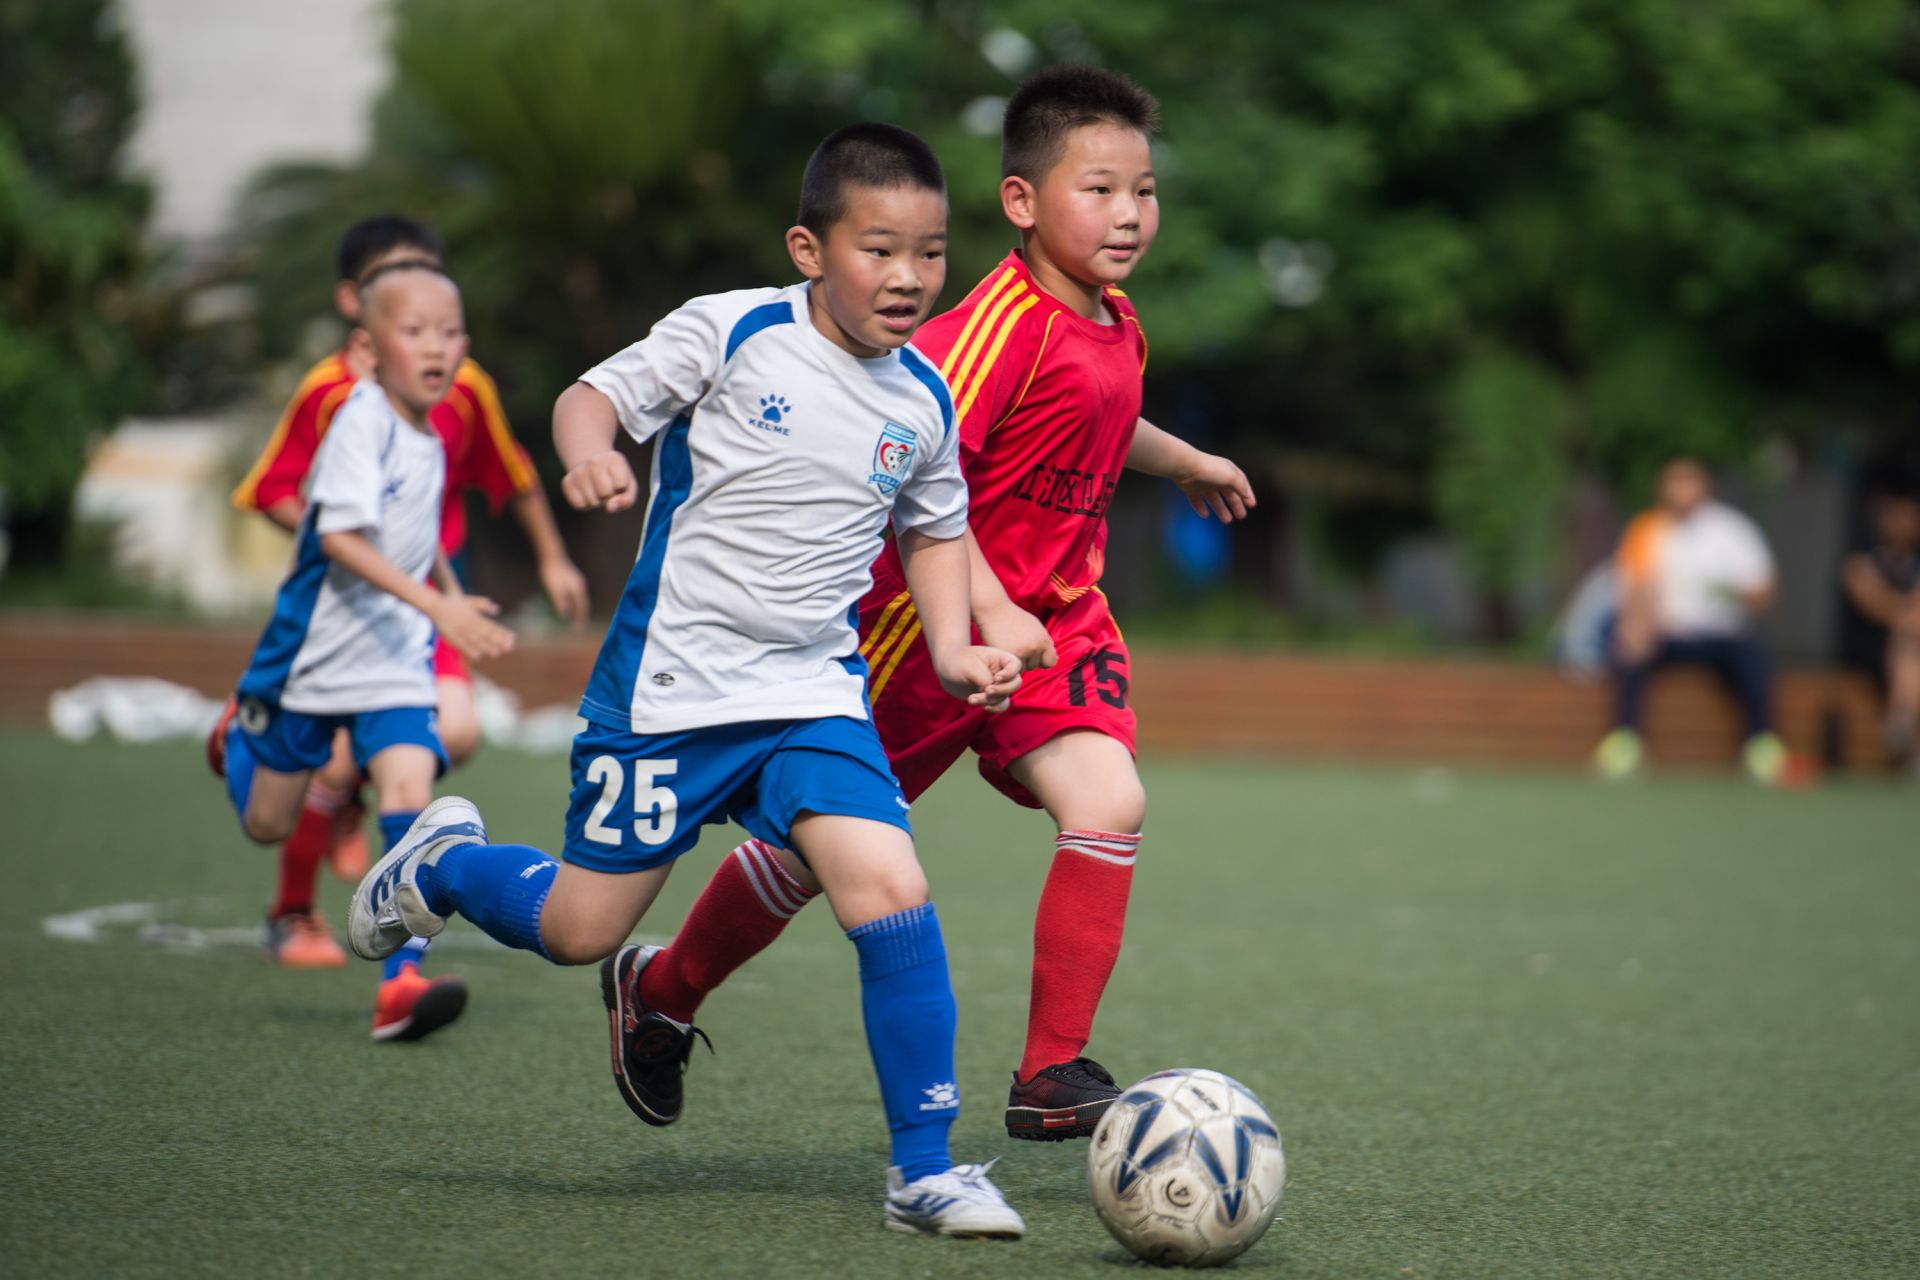 振兴路小学每个年级都有球队更注重足球文化和底蕴的营造